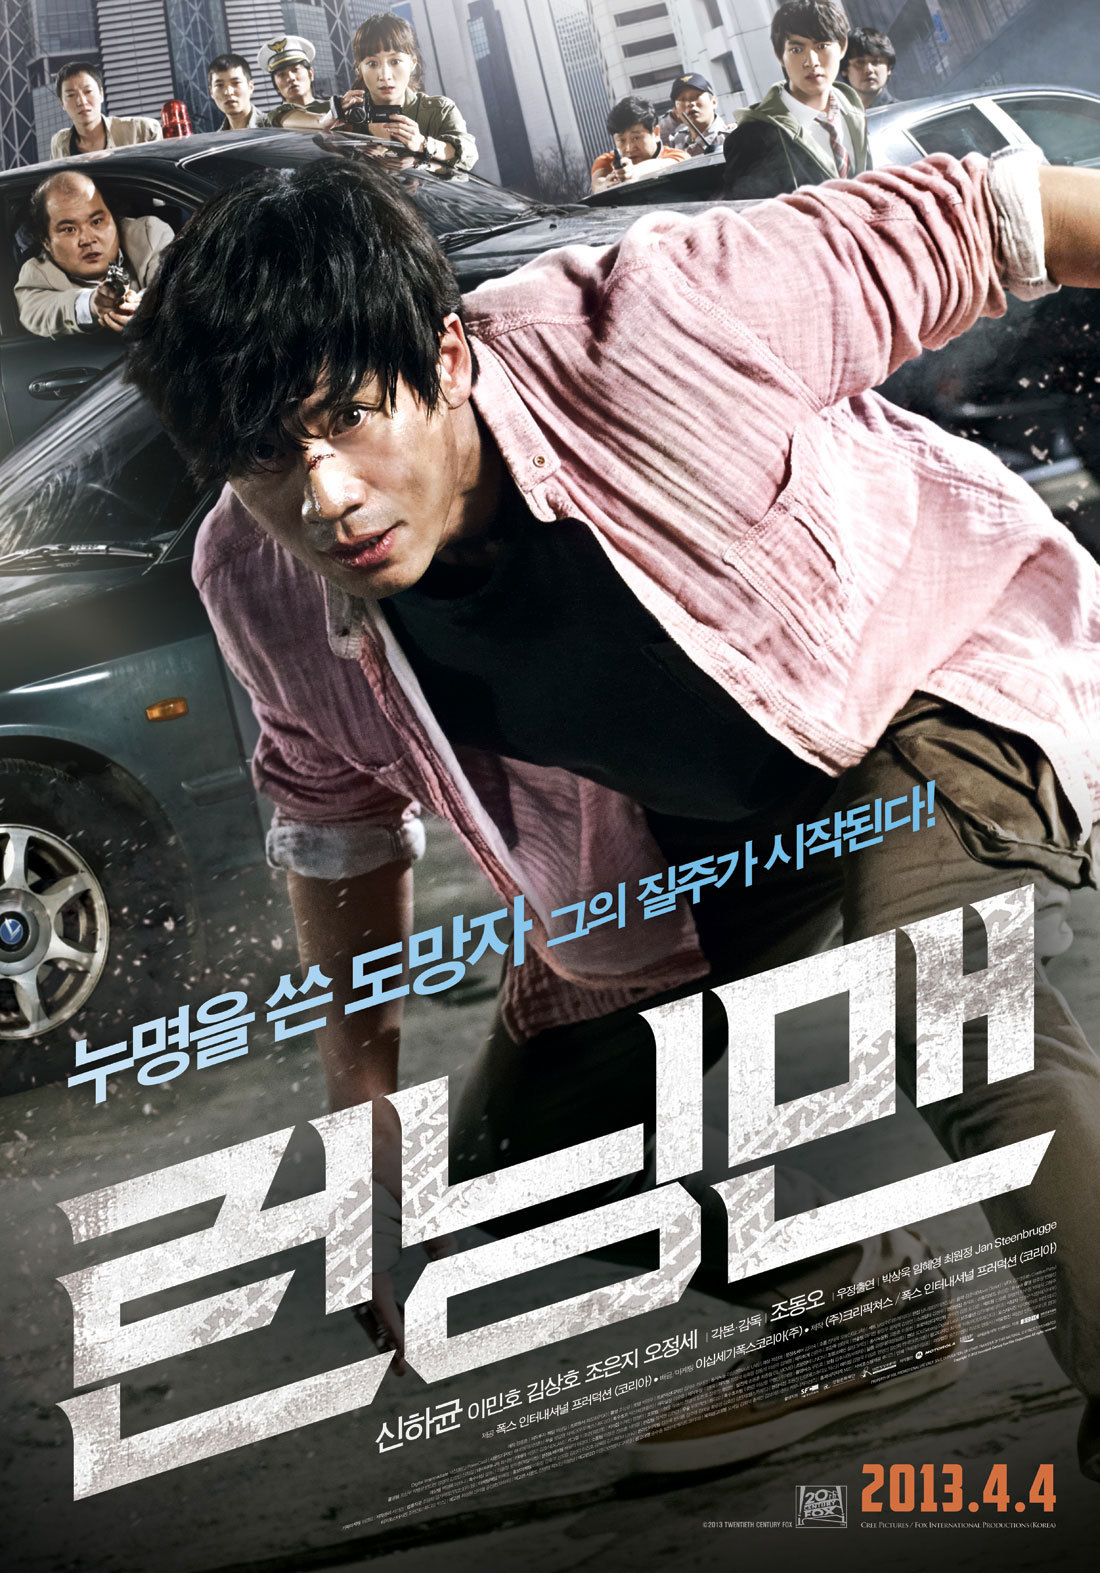 Running Man by Shin Ha Kyun